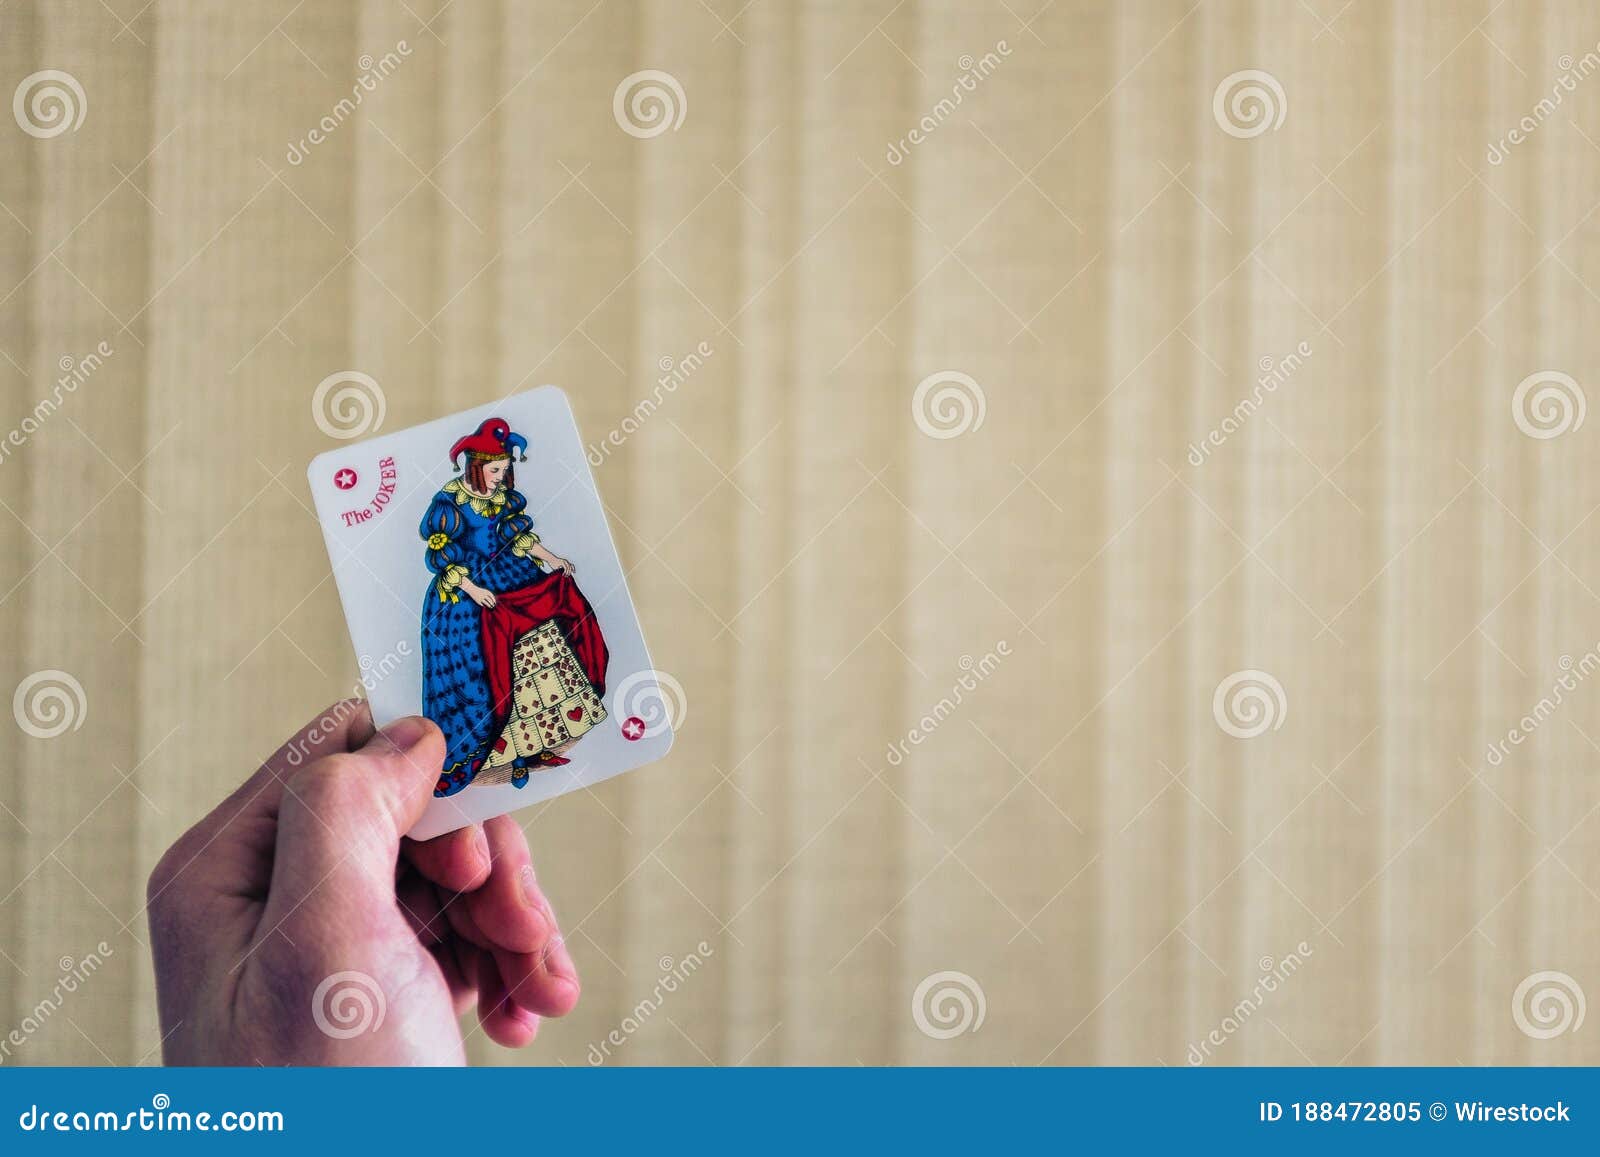 Closeup Shot Of A Person Holding The Joker Card Behind A Light ...